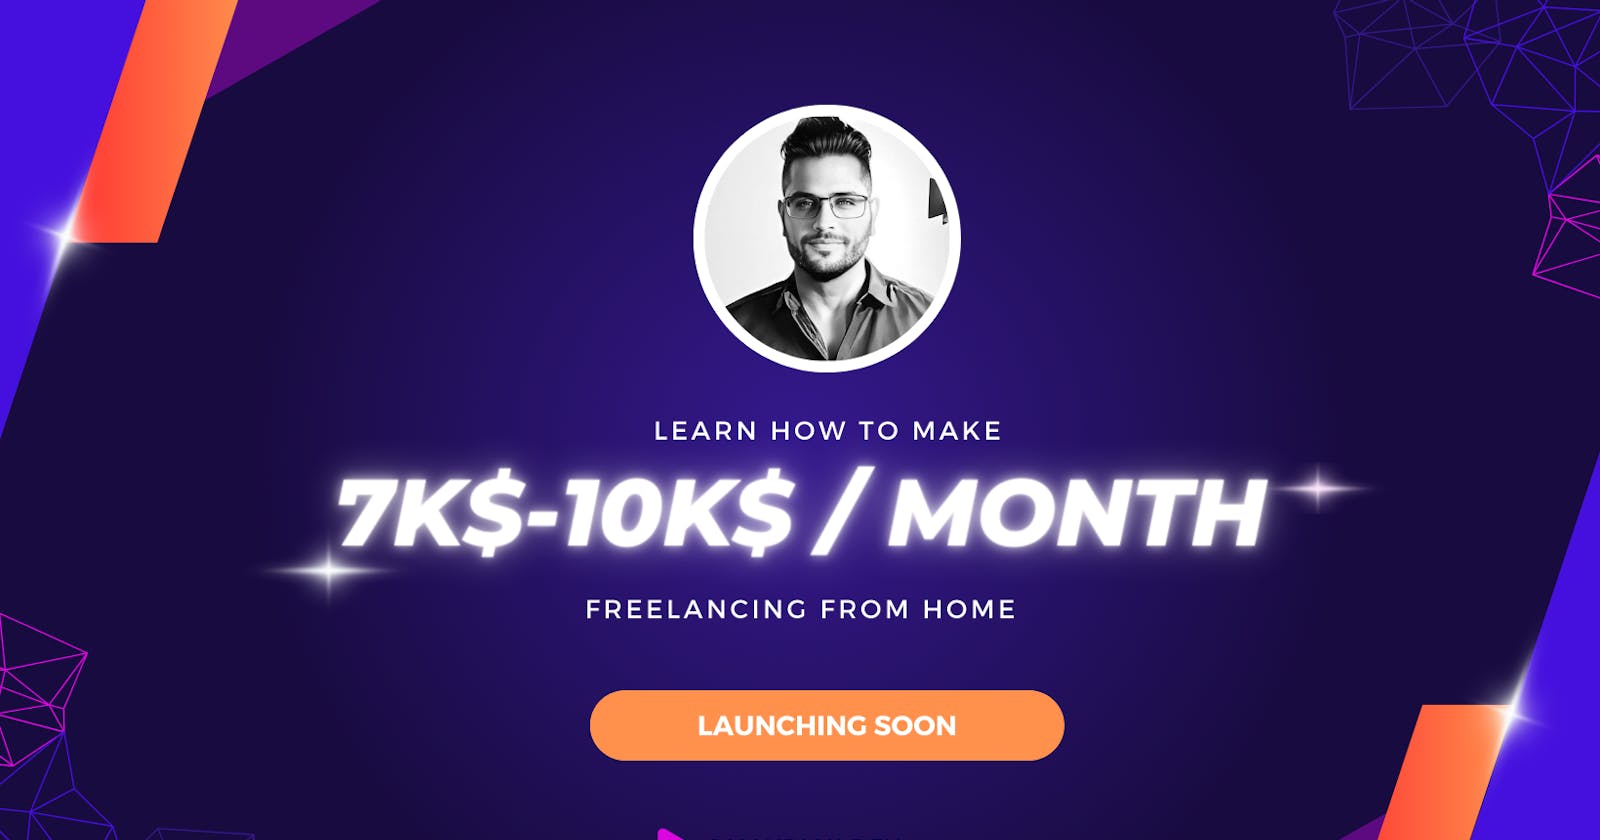 Making 7k-10k / month from freelancing